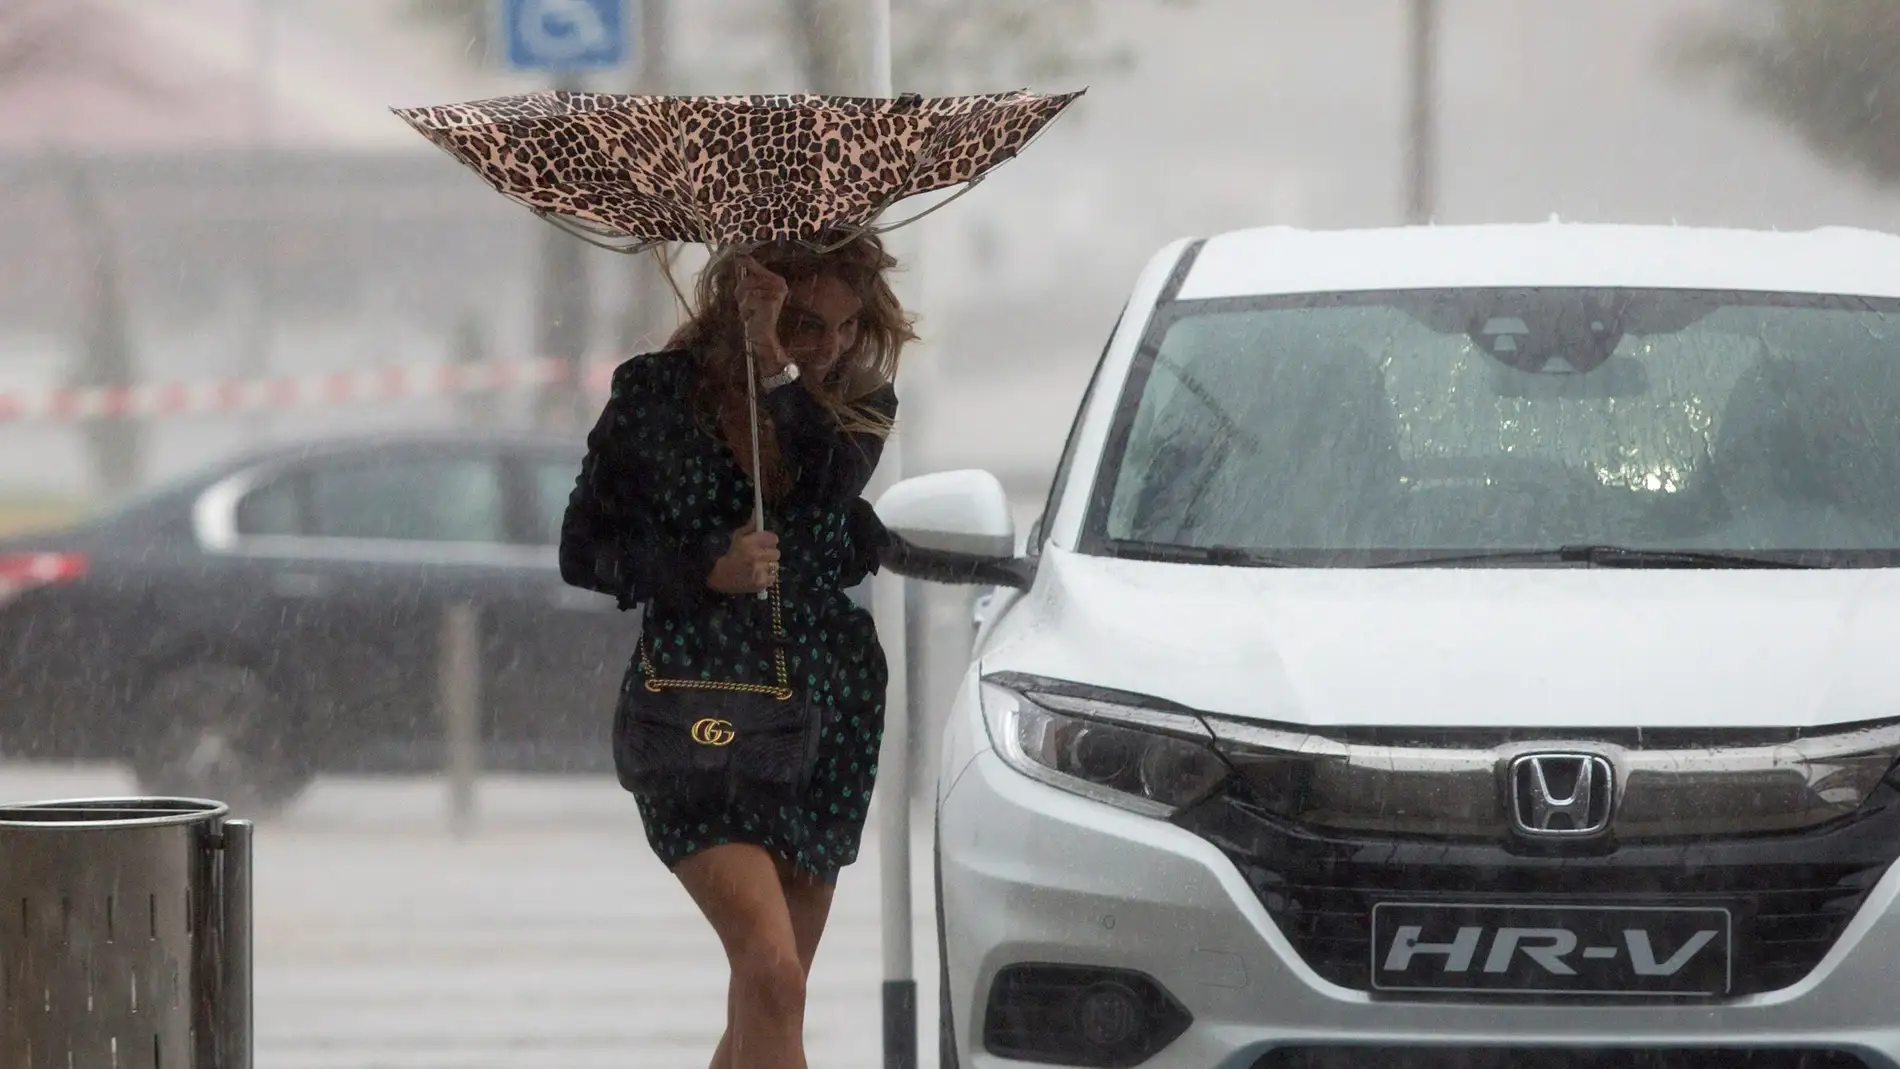 Una mujer sujeta el paraguas intentando que no se le vuele debido al viento